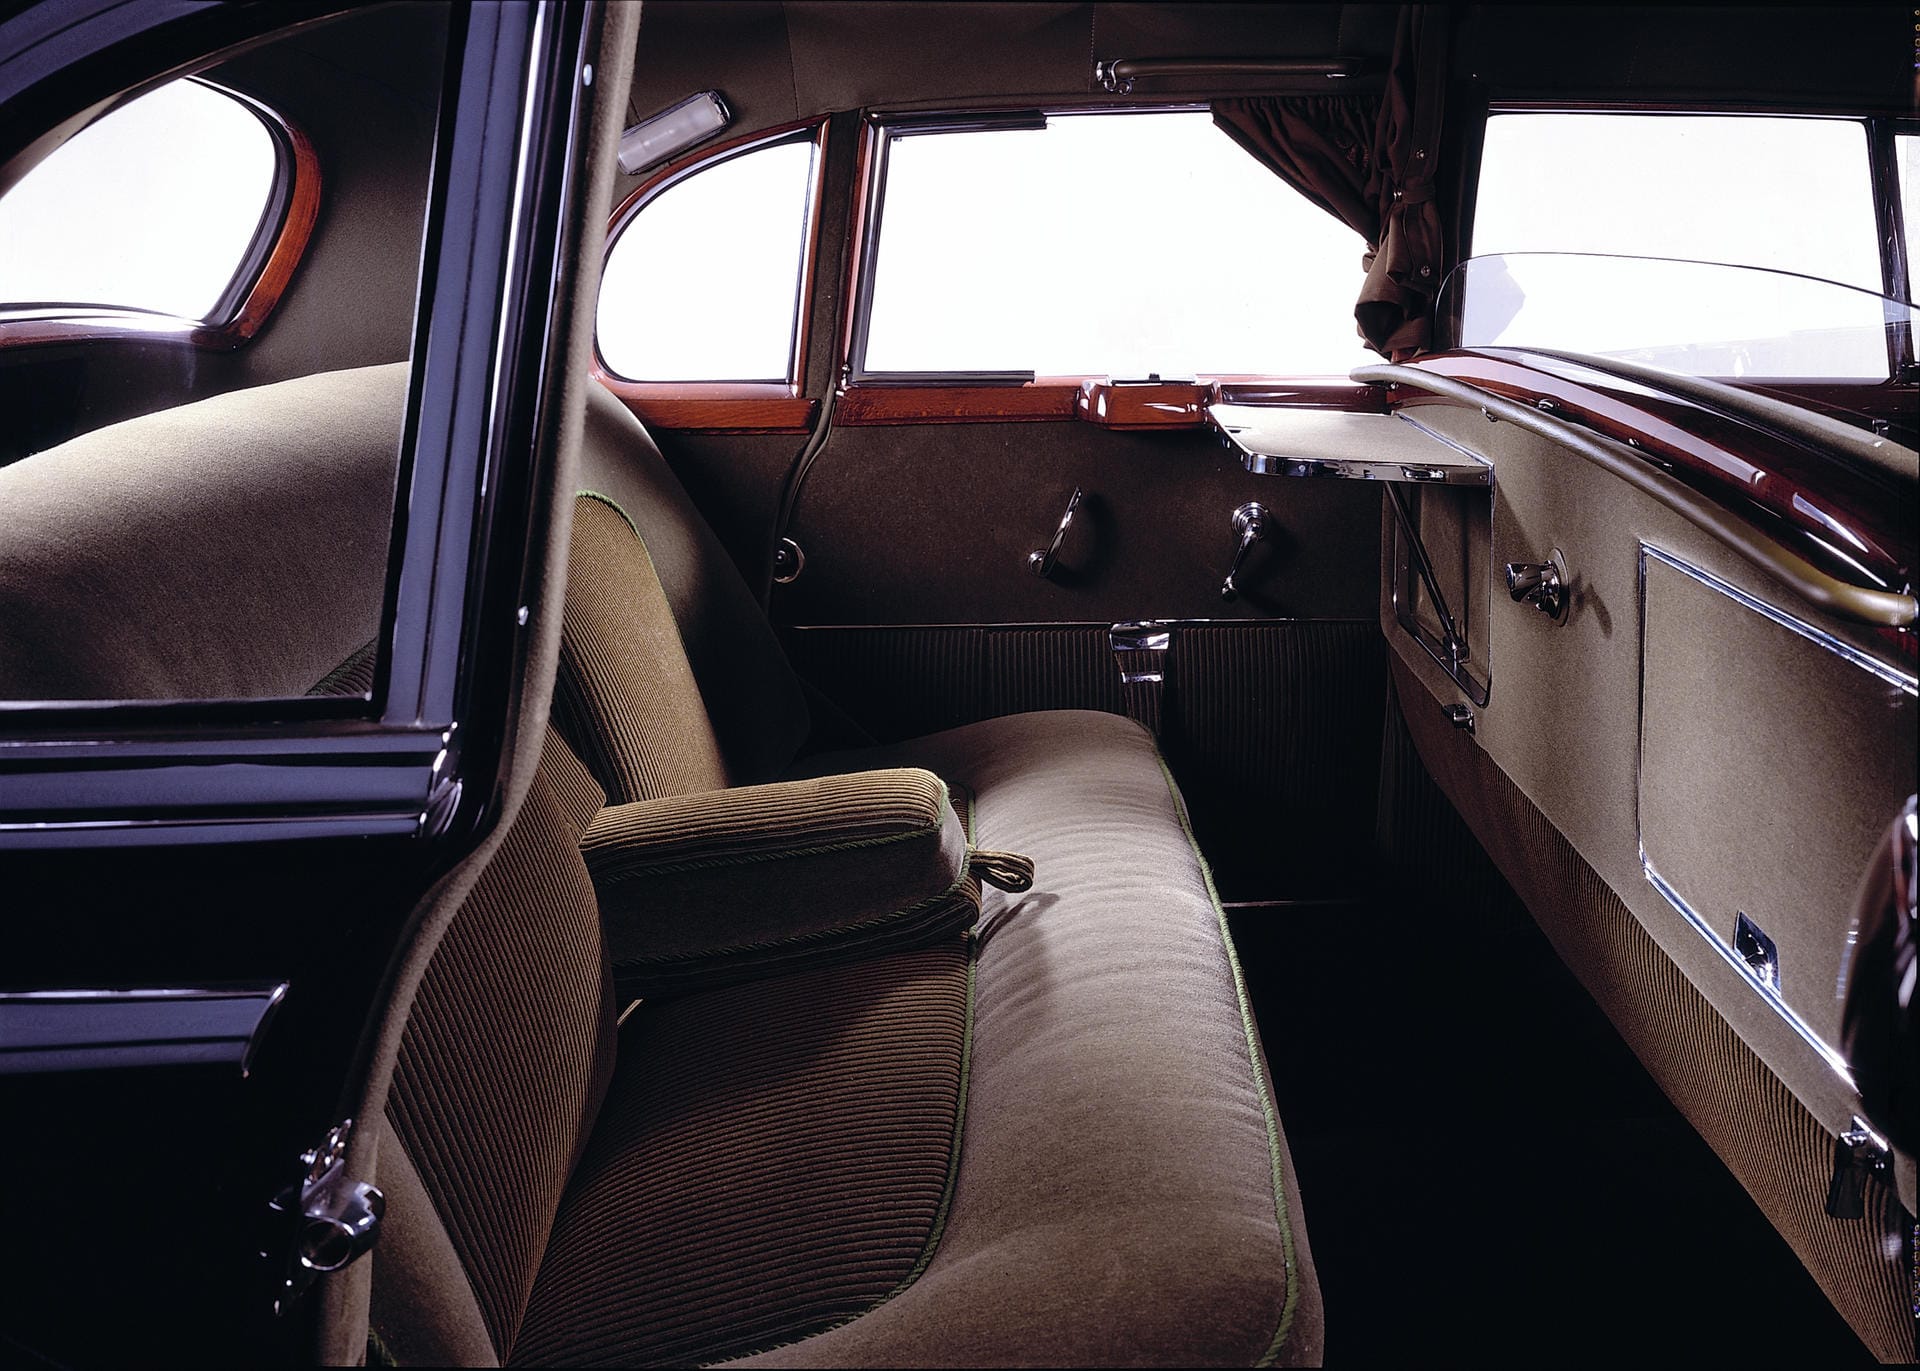 Klapptische, Vorhänge, Trennscheibe zwischen den Sitzreihen: Für die Verhältnisse der 50er-Jahre war der 300er luxuriös ausgestattet.